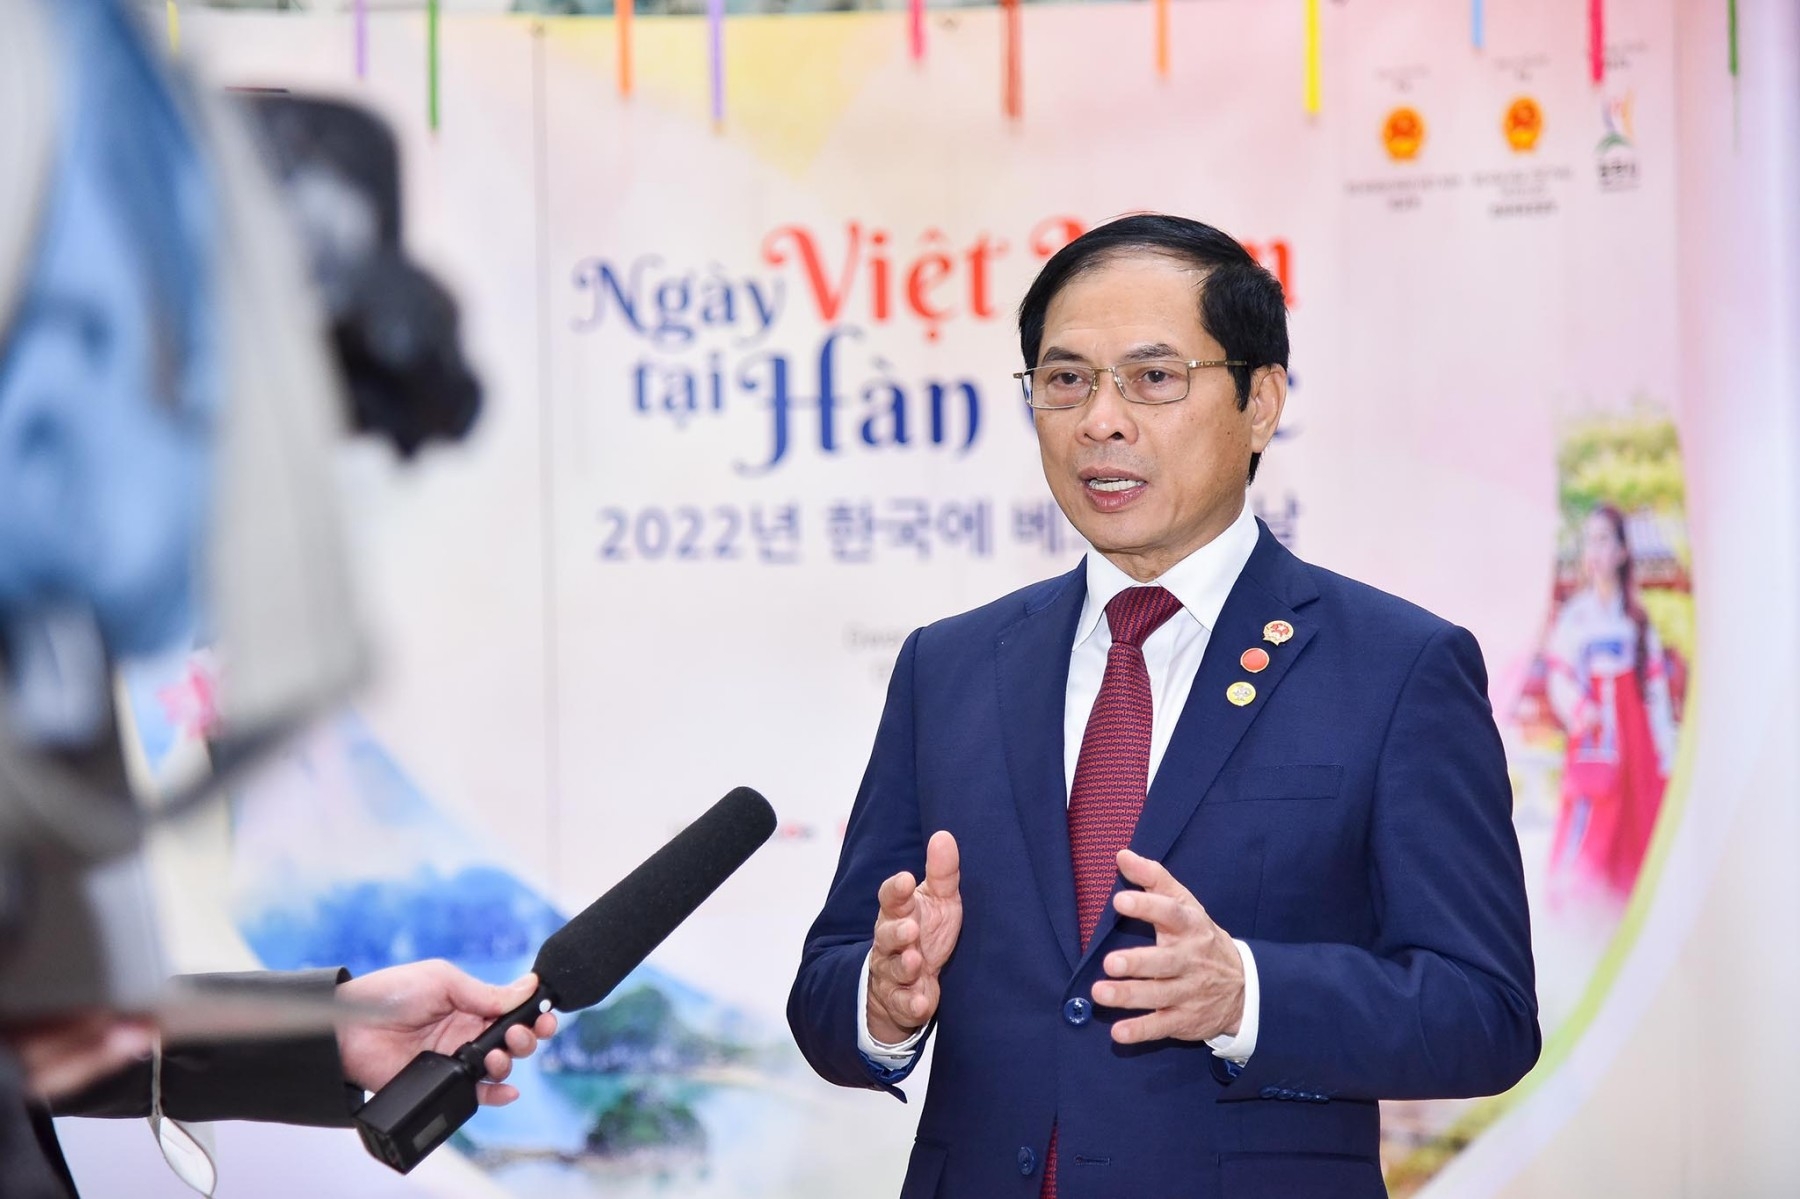 Mở ra thời kỳ phát triển mới, mạnh mẽ và thực chất đối với quan hệ Việt Nam - Hàn Quốc